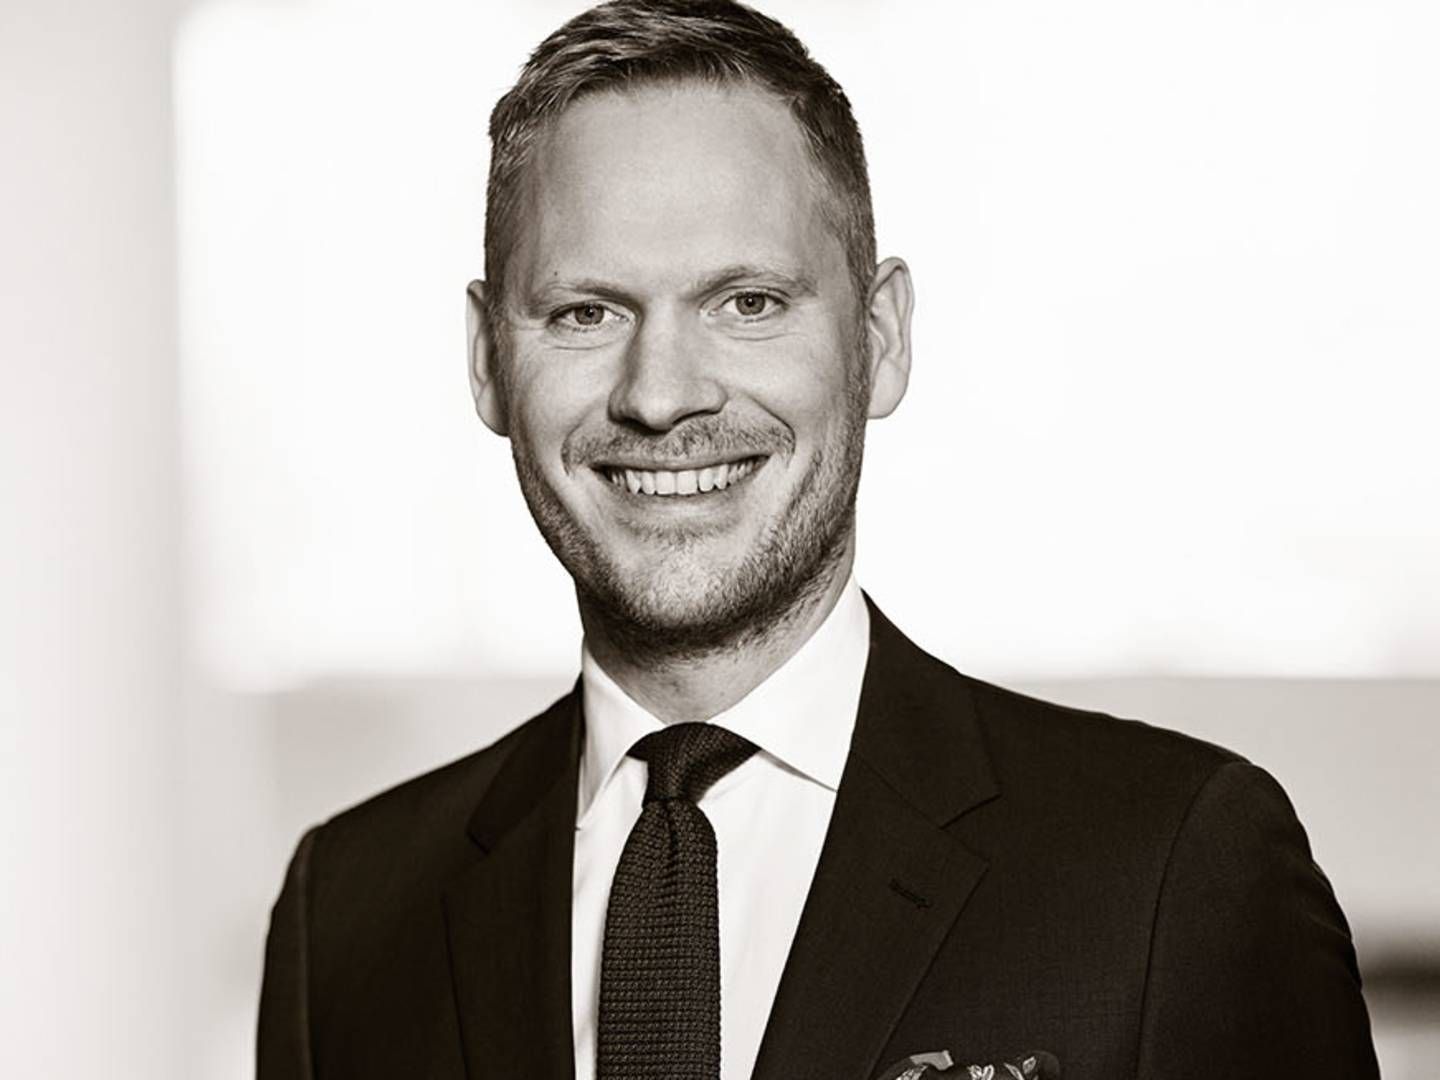 Peter Helbo Langsted blev i 2015 uddannet som advokat hos Bech-Bruun, hvor han begyndte som studentermedhjælper i 2009. Ved årsskiftet tog den 36-årige M&A-advokat plads i Hortens partnerkreds. | Foto: Horten / PR